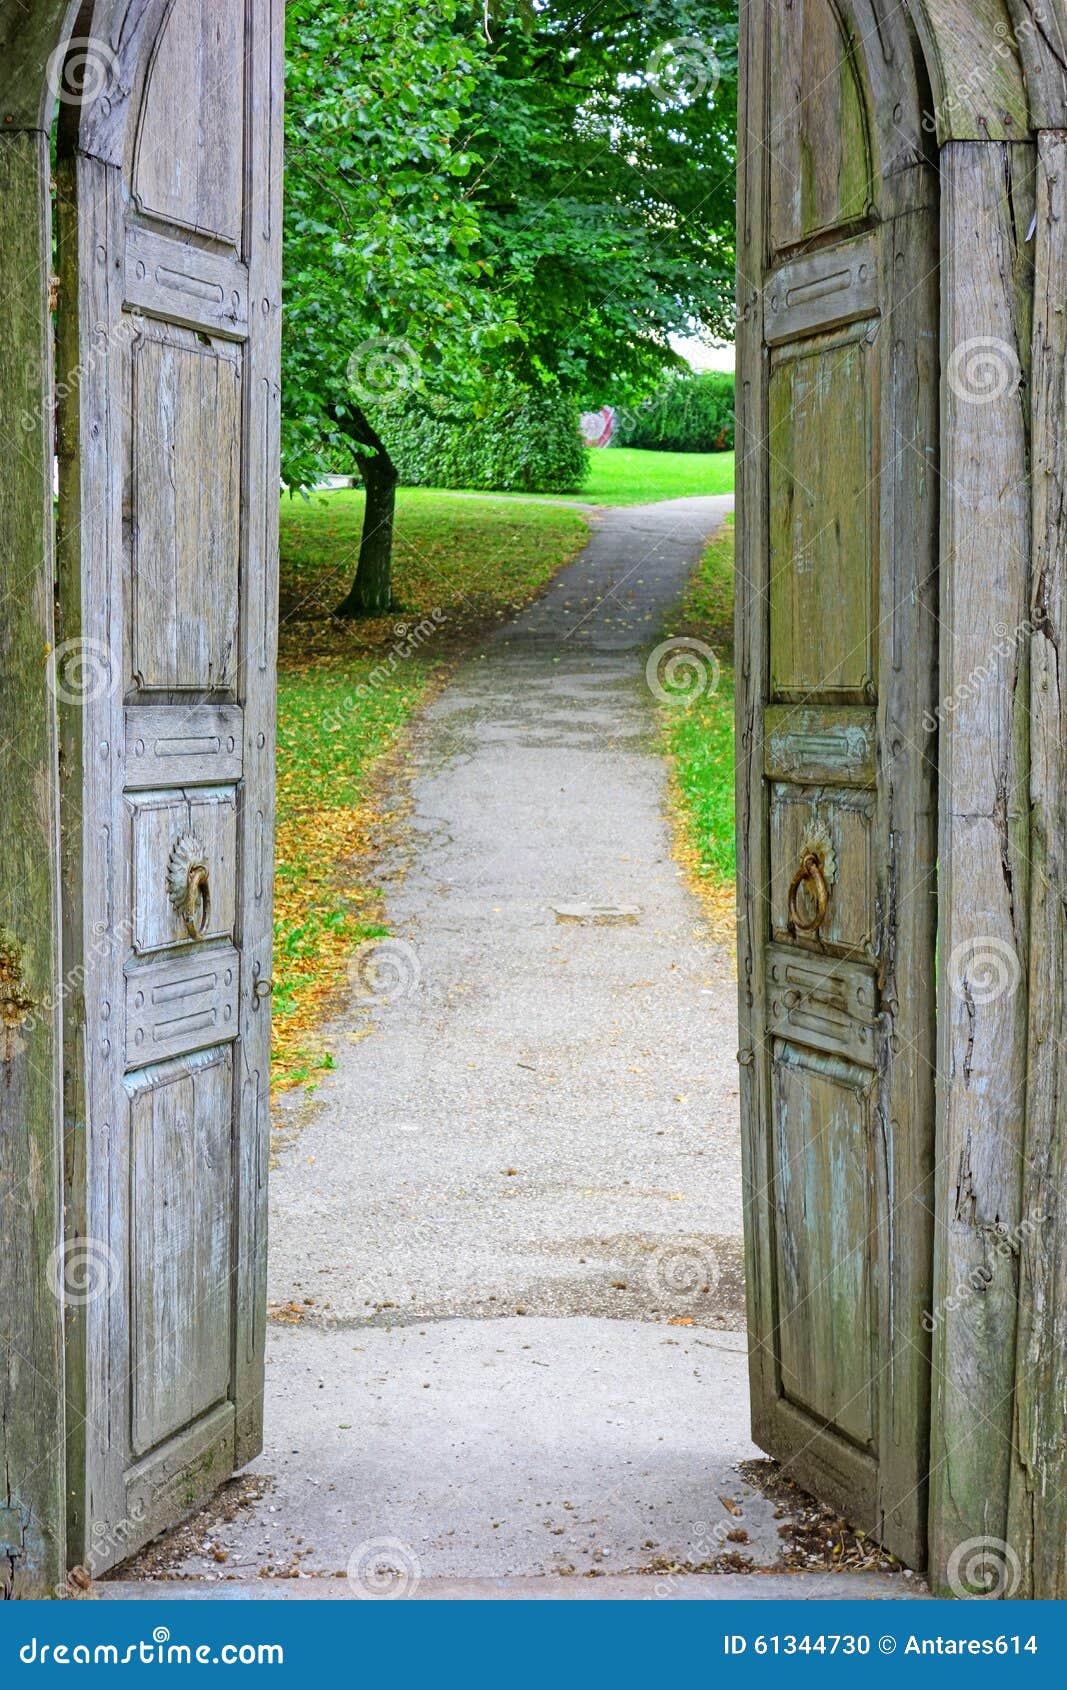 door to nature